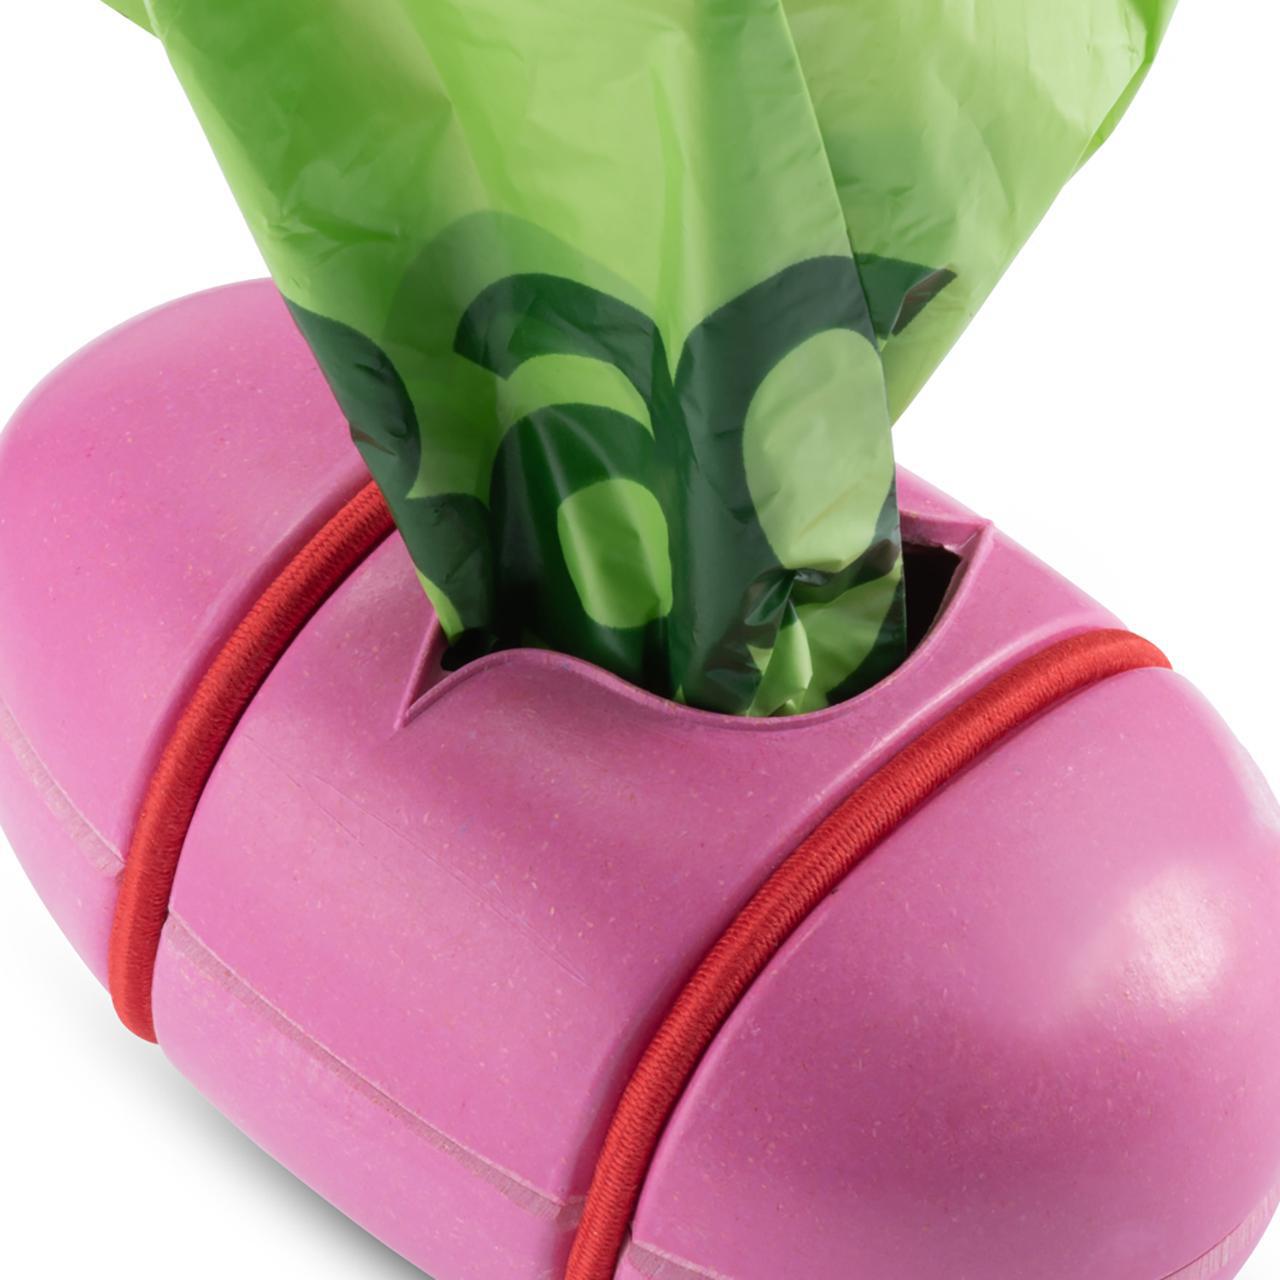 Beco Pocket Poop Bag Dispenser - Pink, with bags